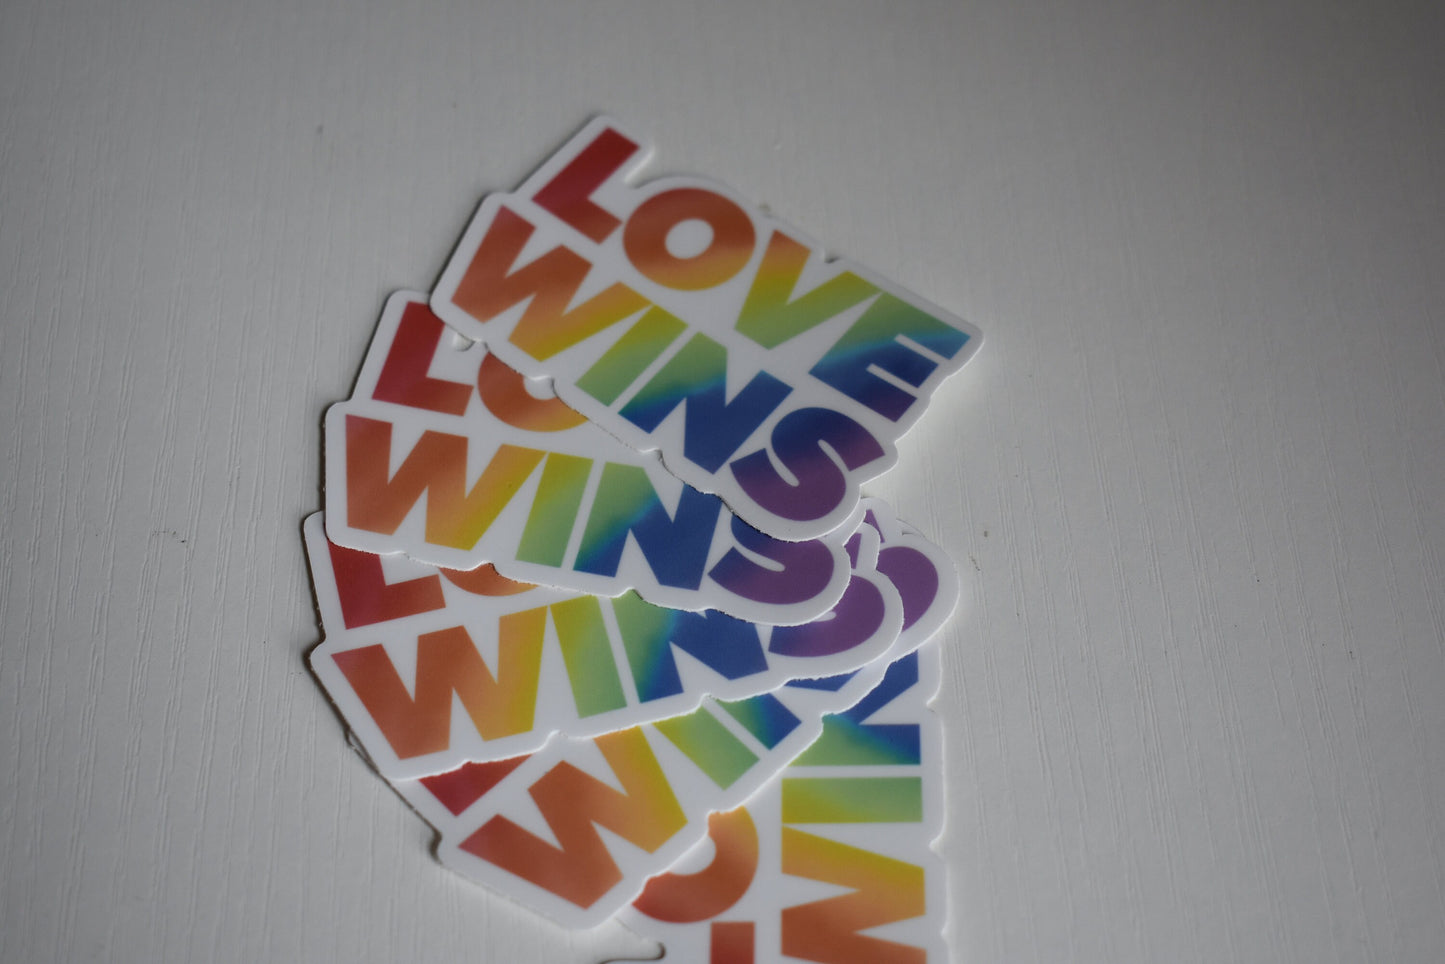 Love Wins Sticker, Vinyl Laptop Waterbottle Sticker, LGBTQ Pride Sticker, Rainbow Sticker, Gay Pride